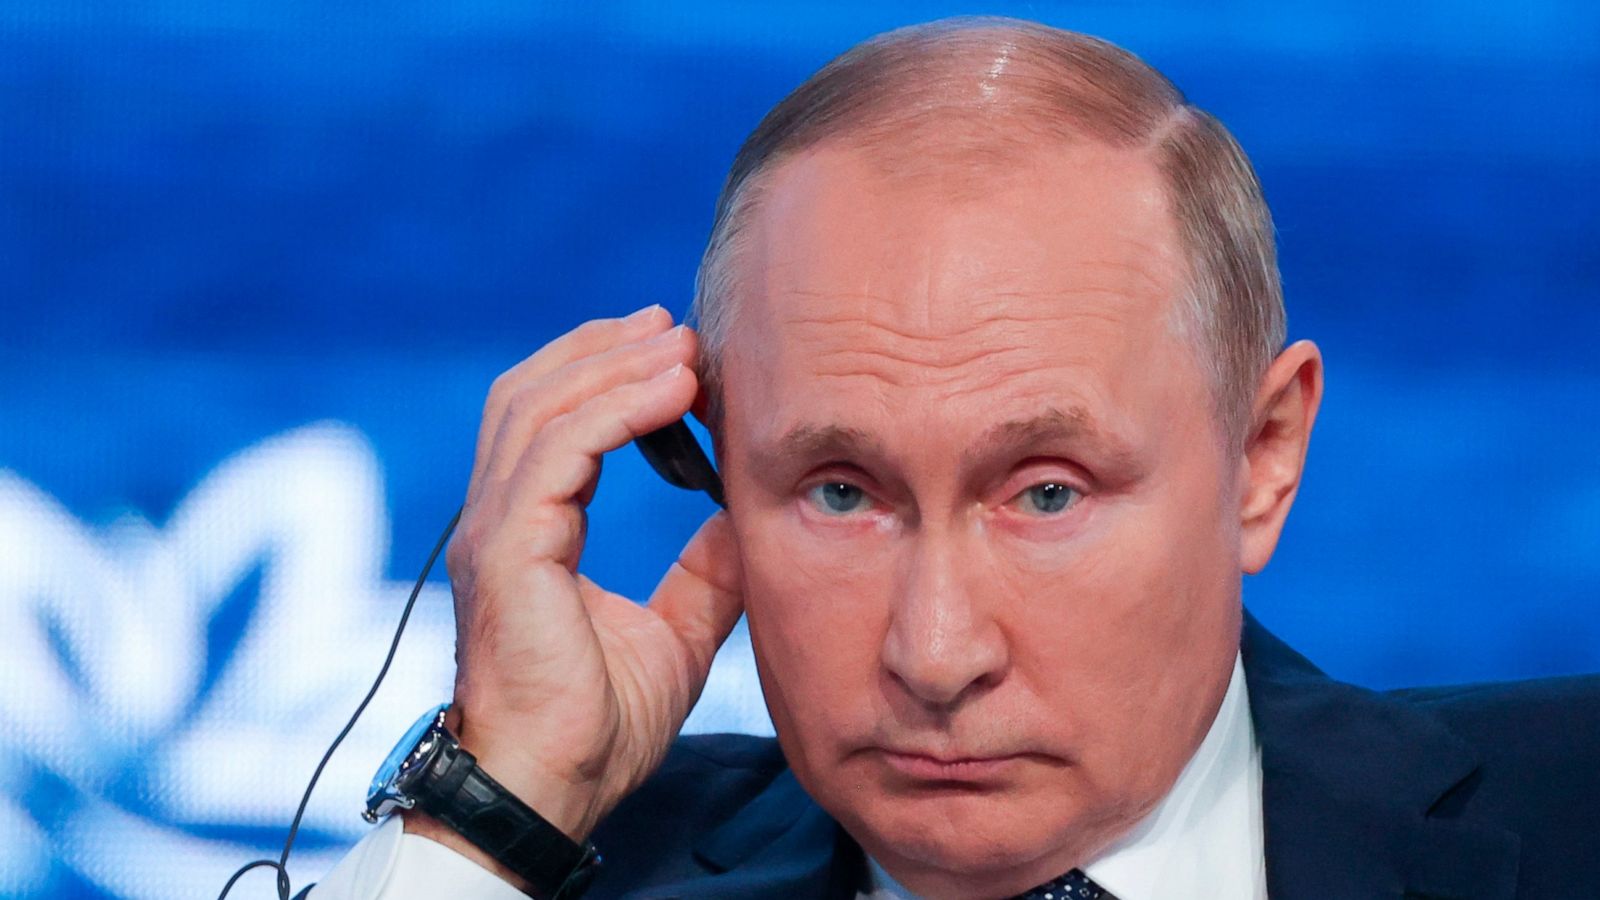 Keputusan Bodoh, Kata Putin tentang Keputusan Barat dan UE dalam Mengurangi Impor Energi Rusia